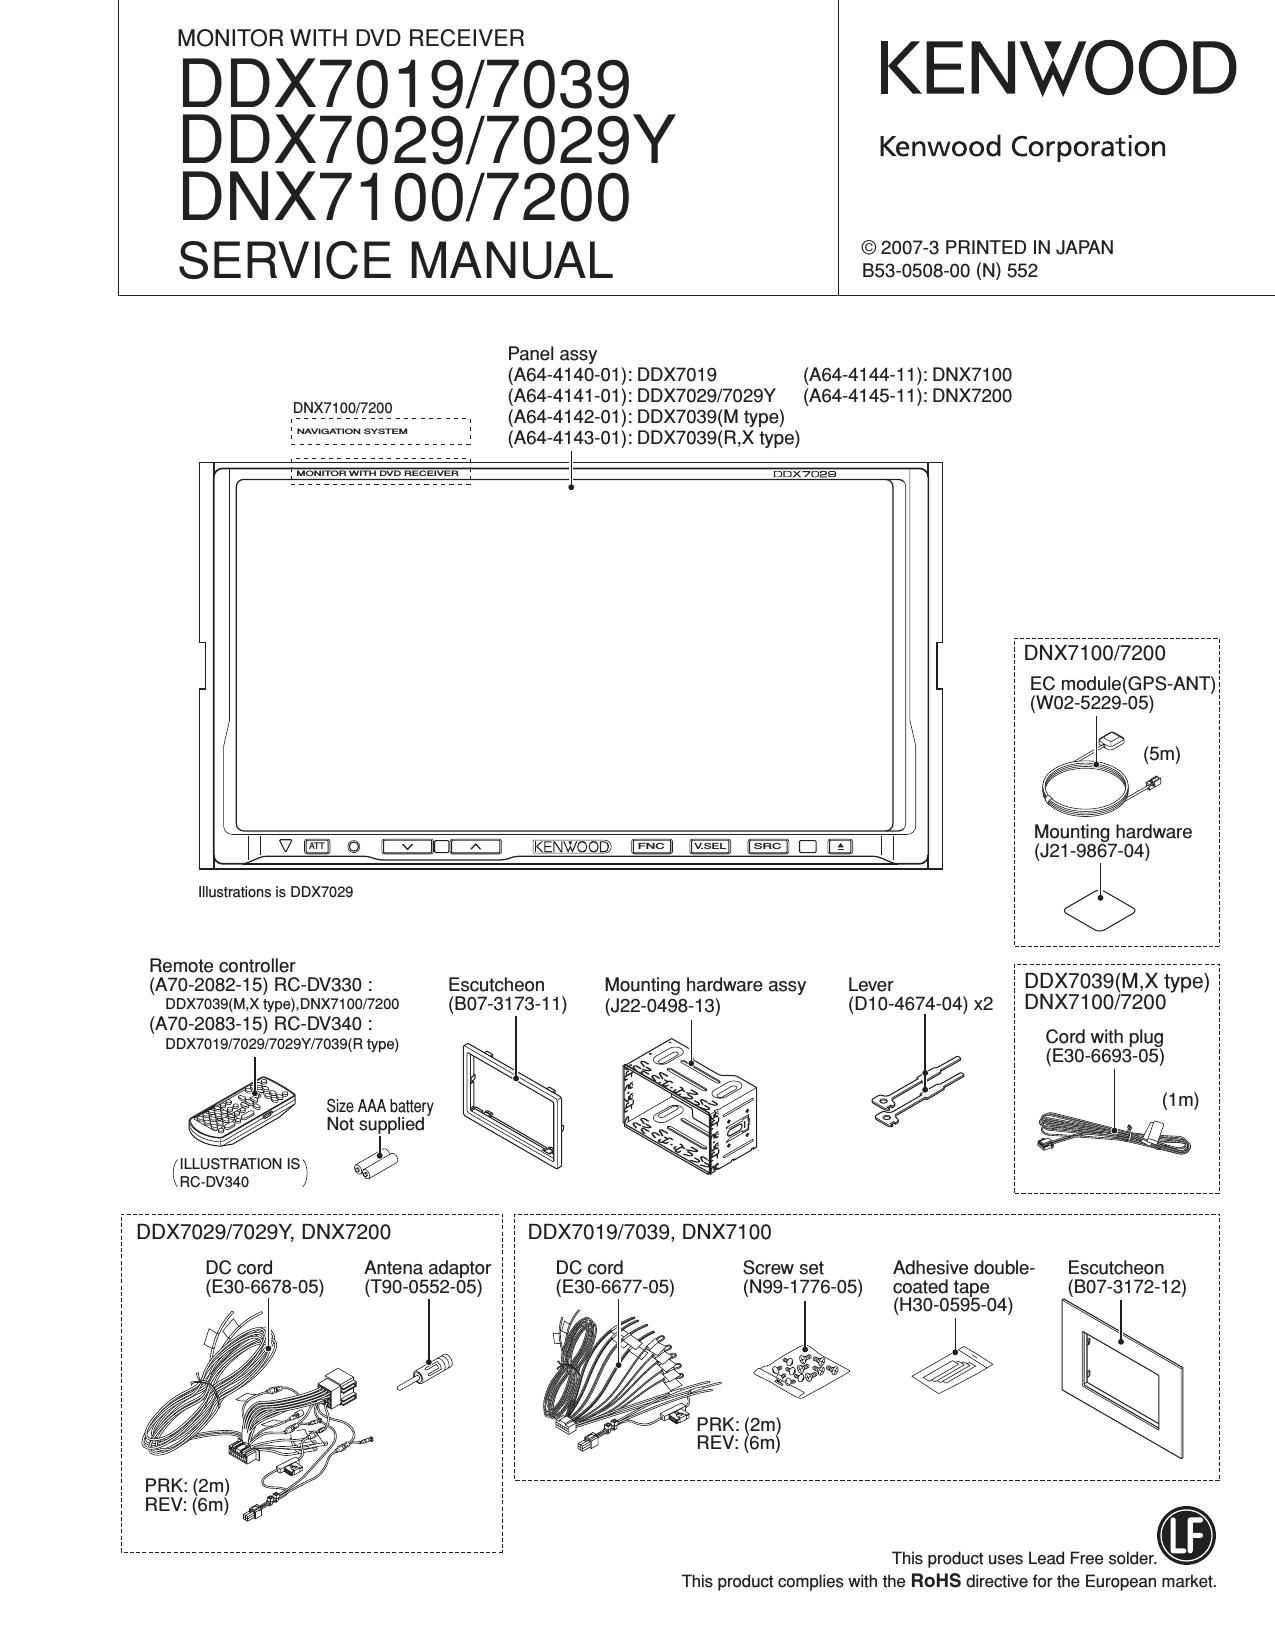 Kenwood DDX 7029 Y HU Service Manual